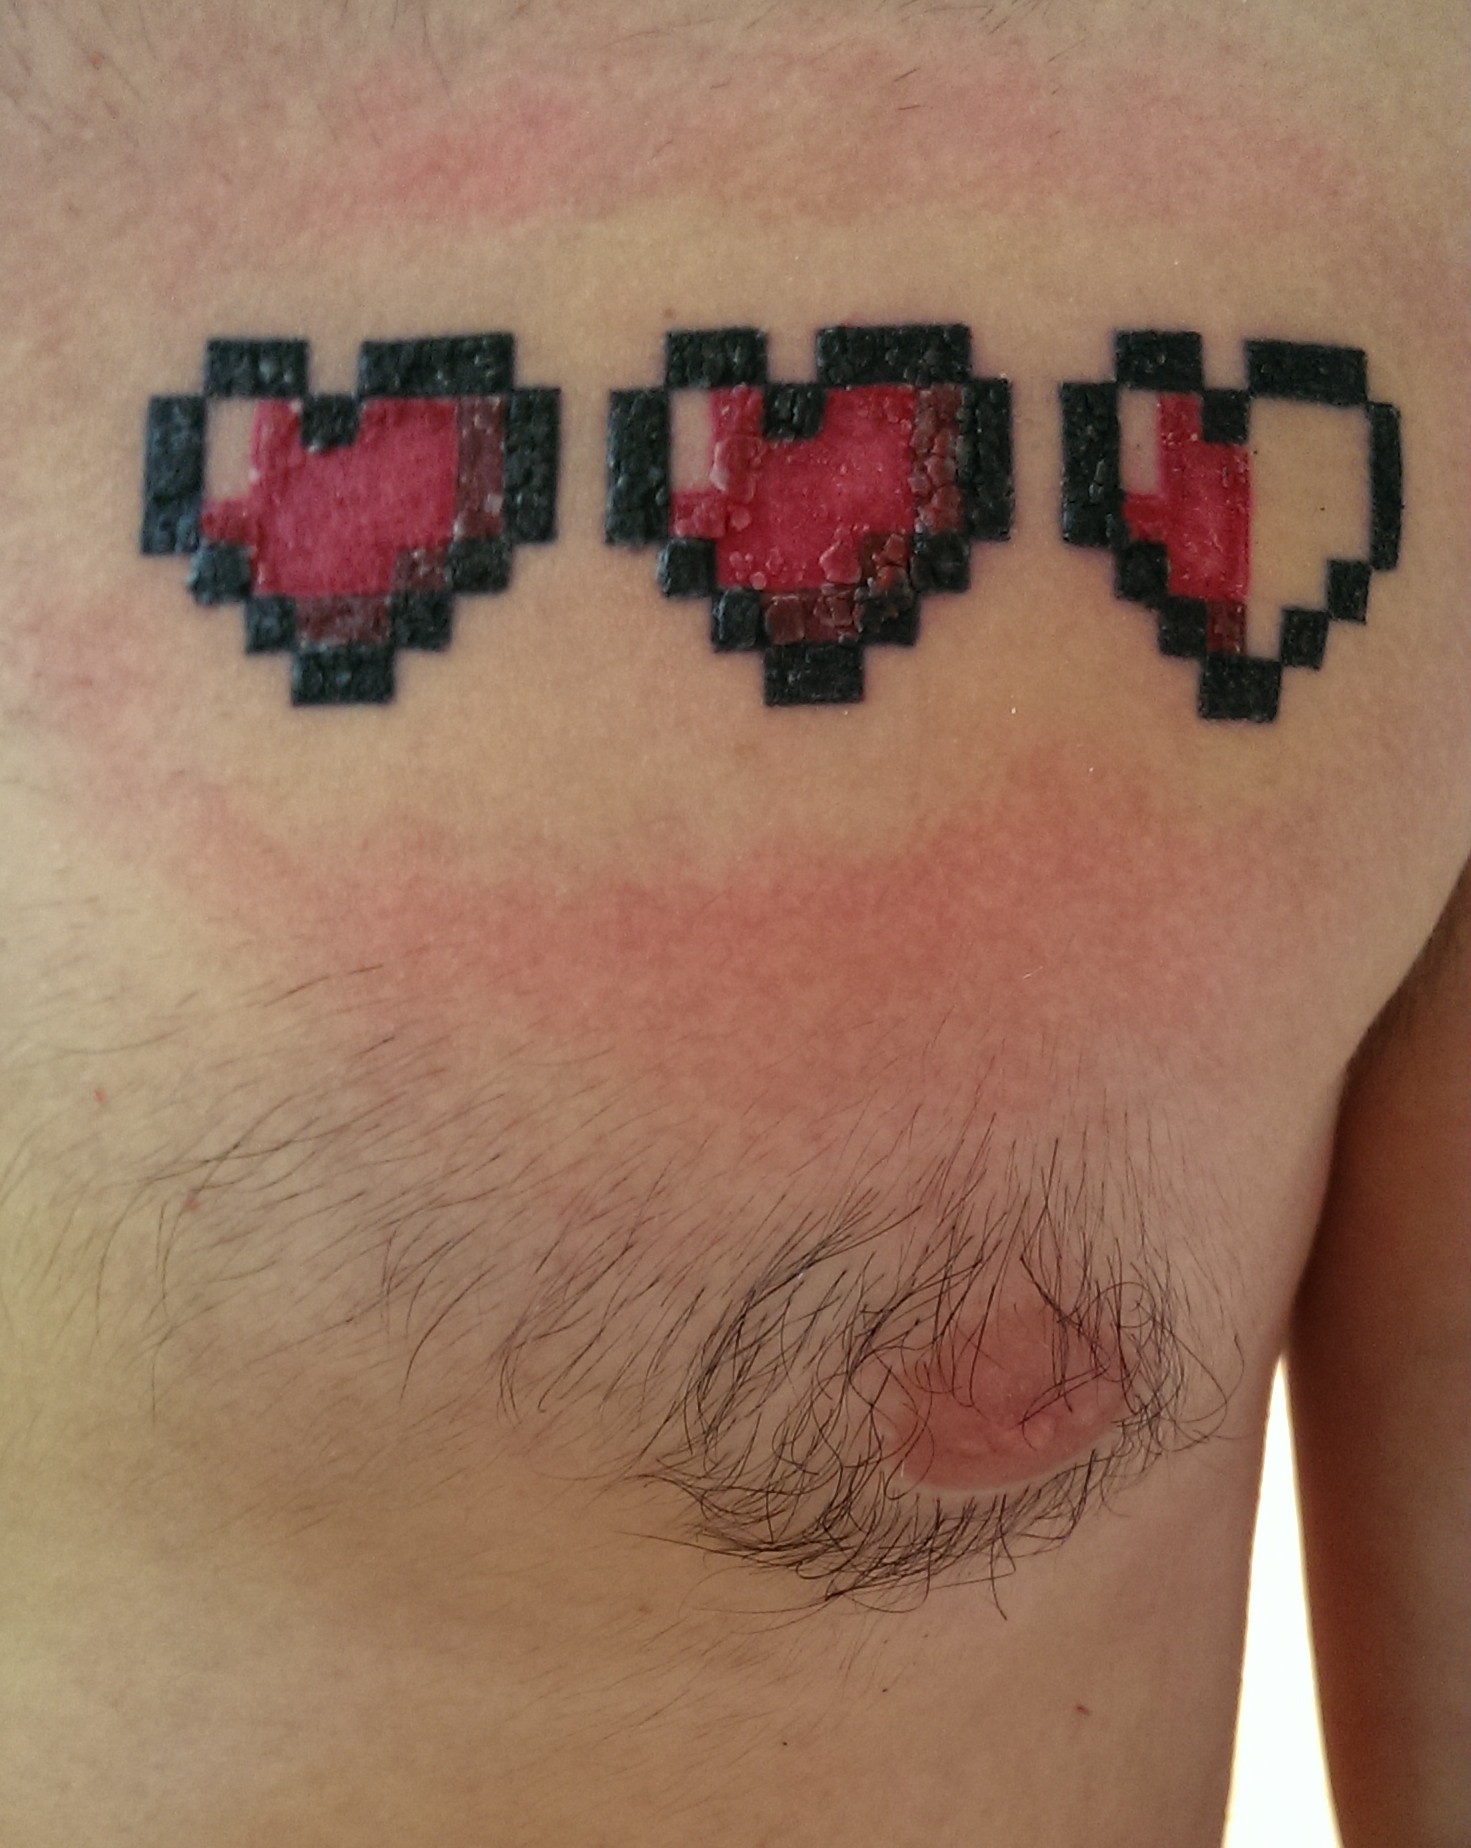 The 8-Bit Zelda Hearts Tattoo - Gutsy Geek